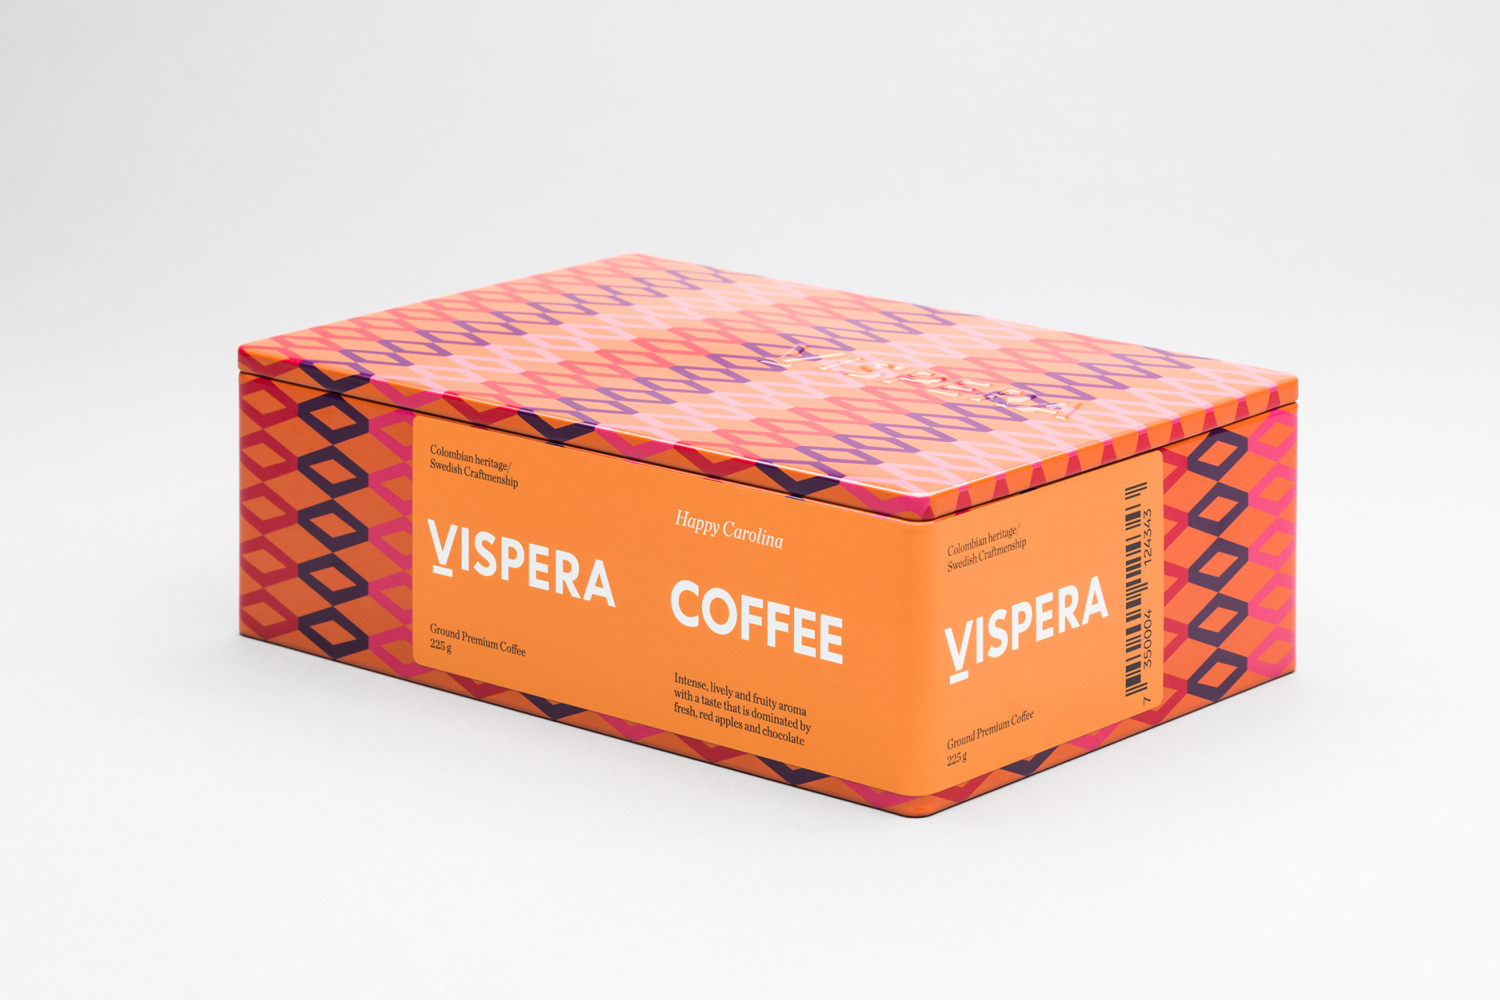 Scandinavian Packaging Design – Víspera Coffee by Stockholm Design Lab, Sweden